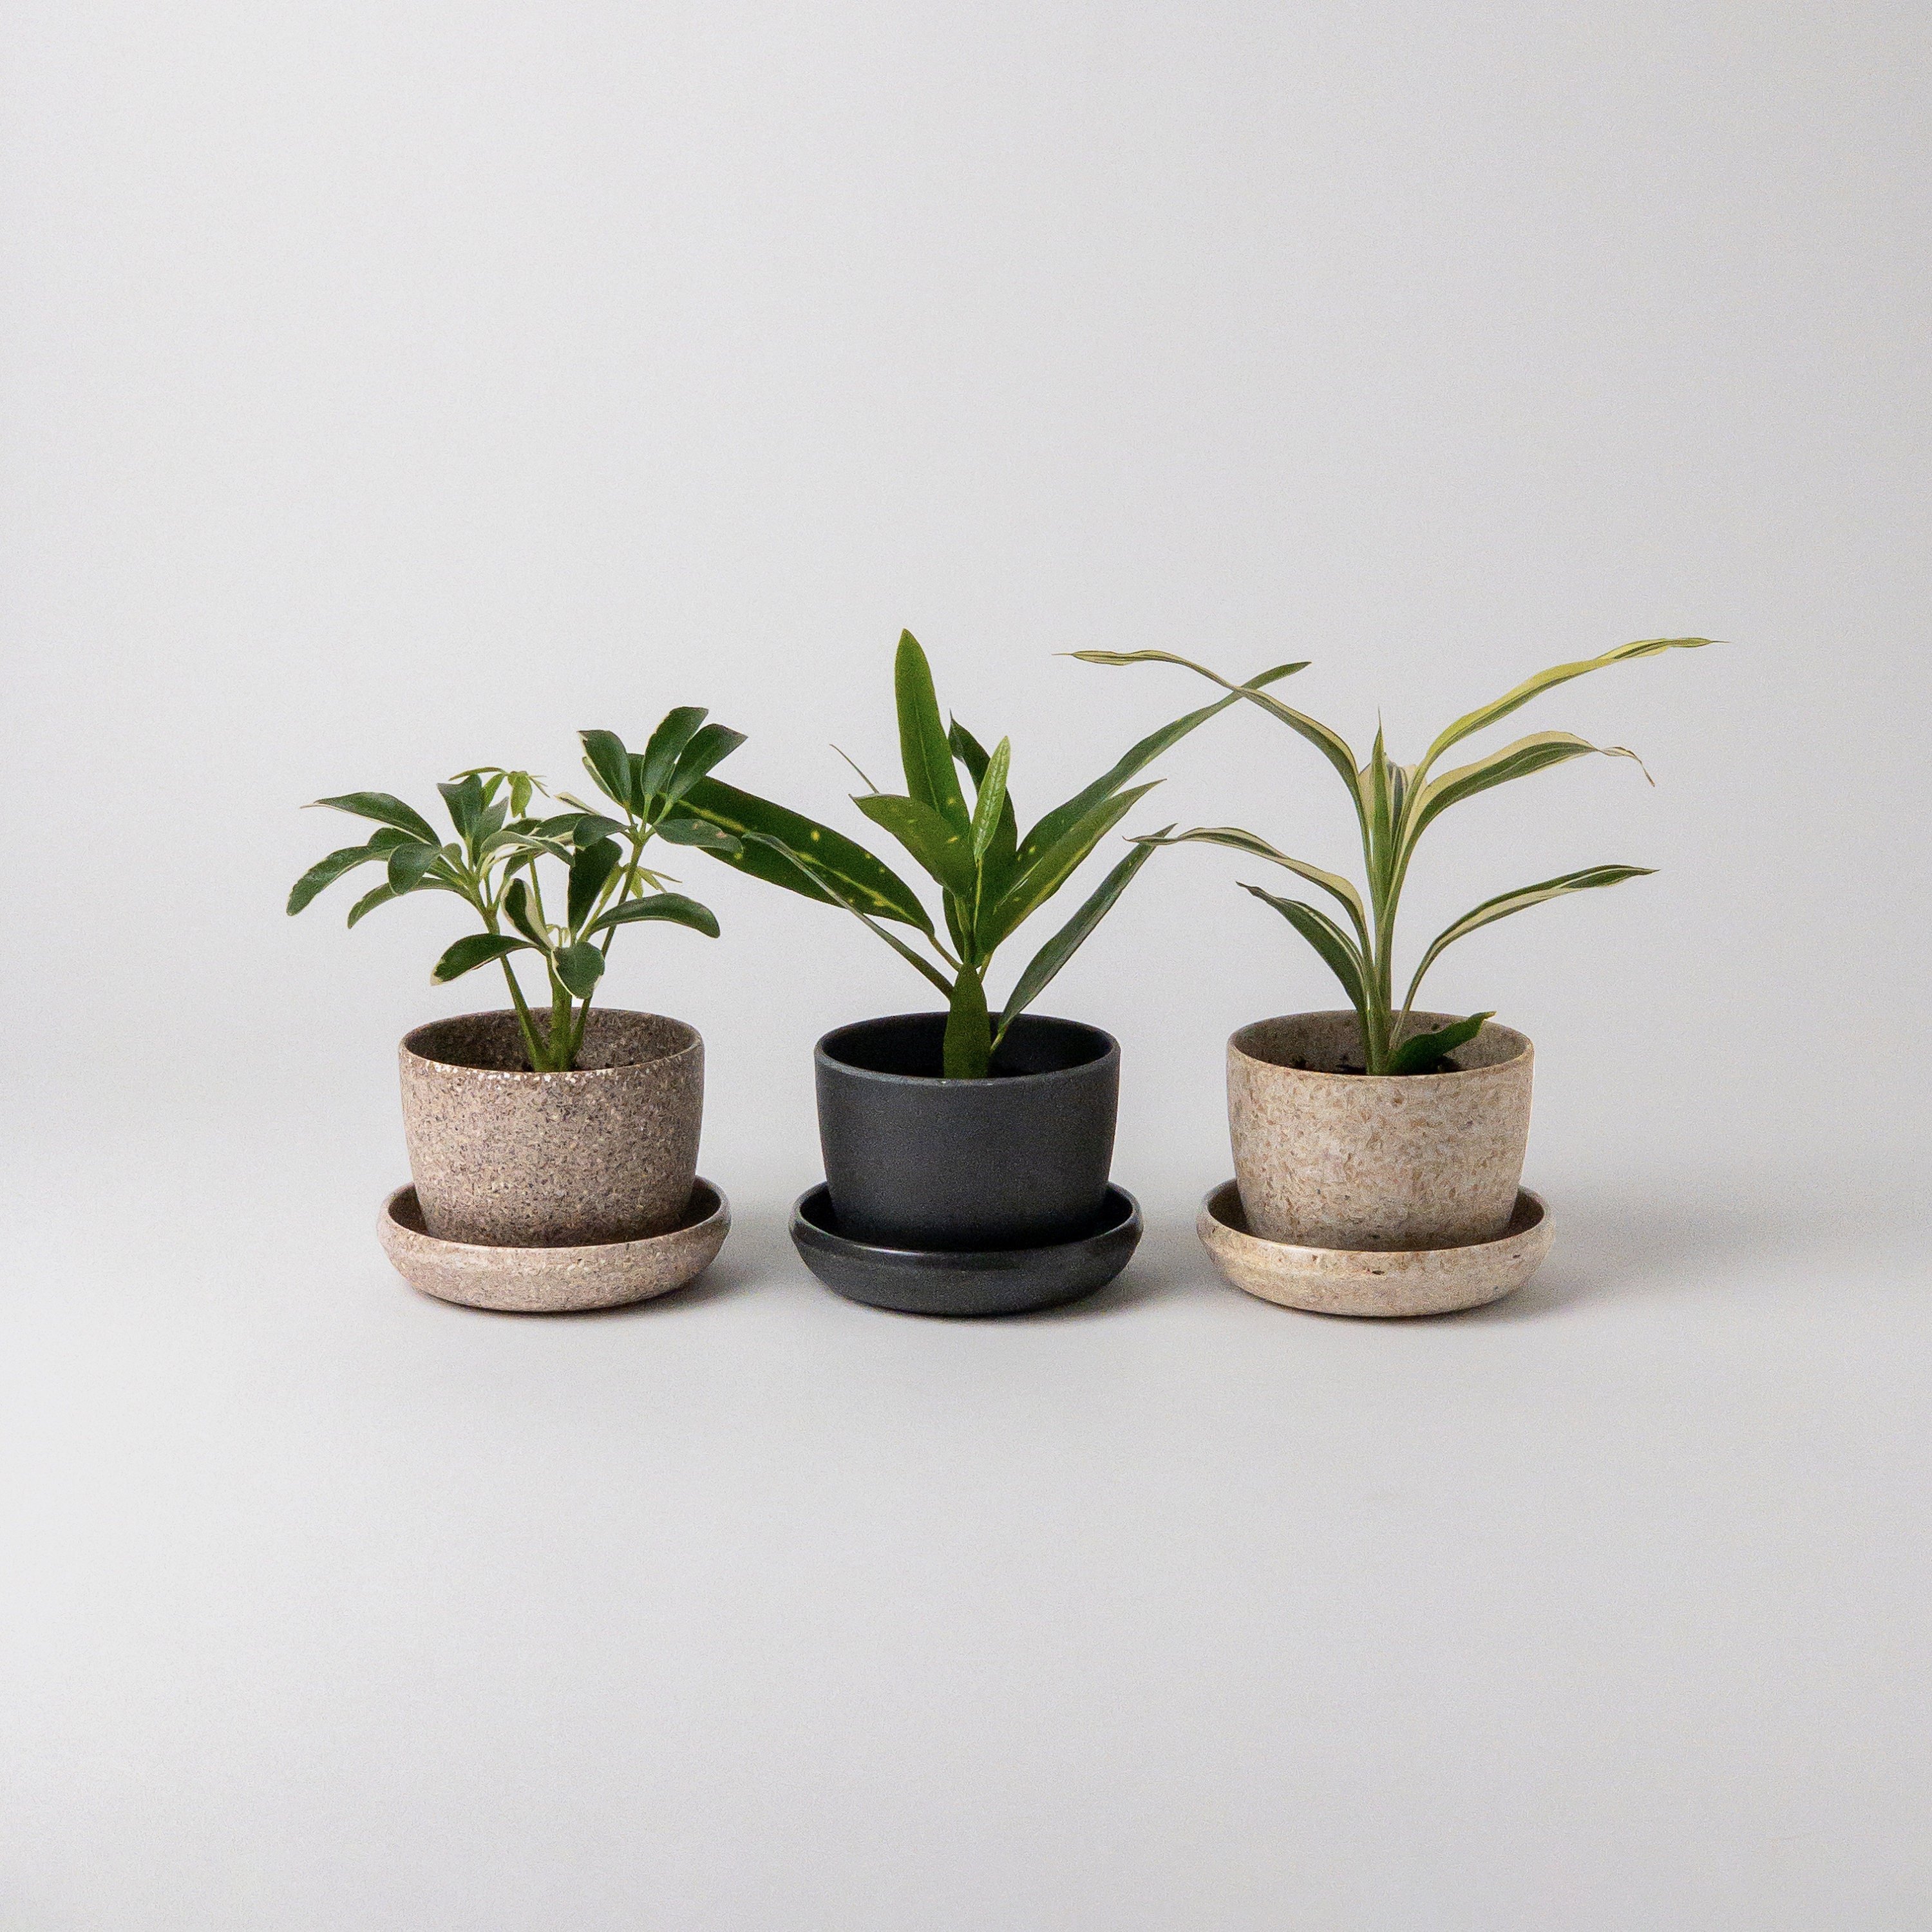 3d print wood plant pot set (4pcs), 3-4 inch small plant pot or